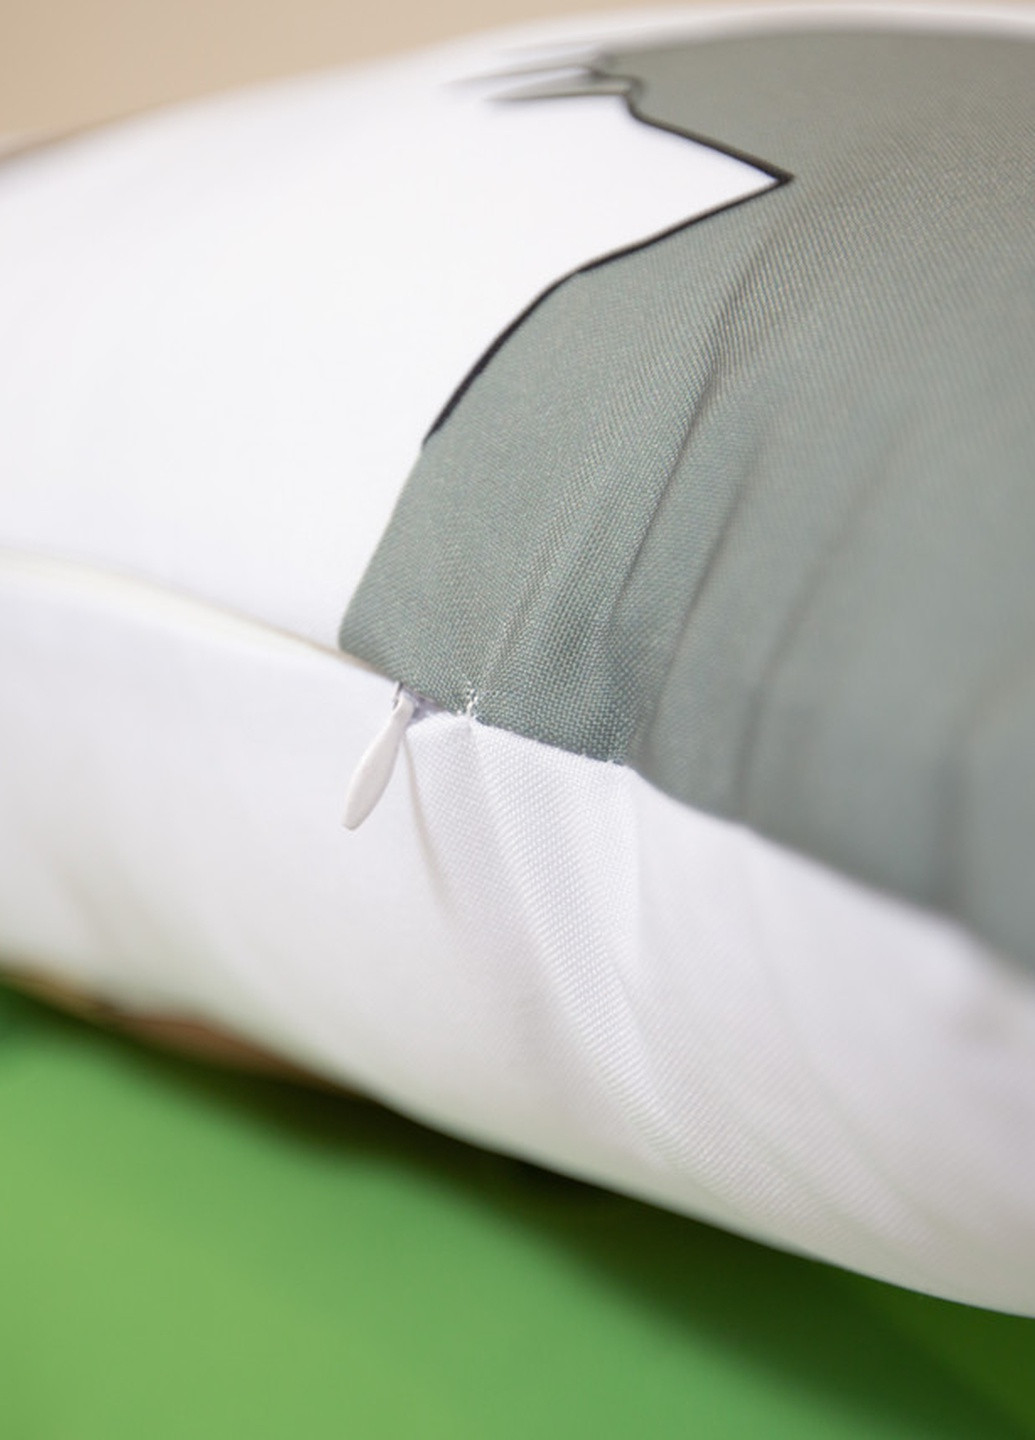 Подушка дакимакура Тору Оикава из аниме Волейбол декоративная ростовая подушка для обнимания 30*60 No Brand (258995469)